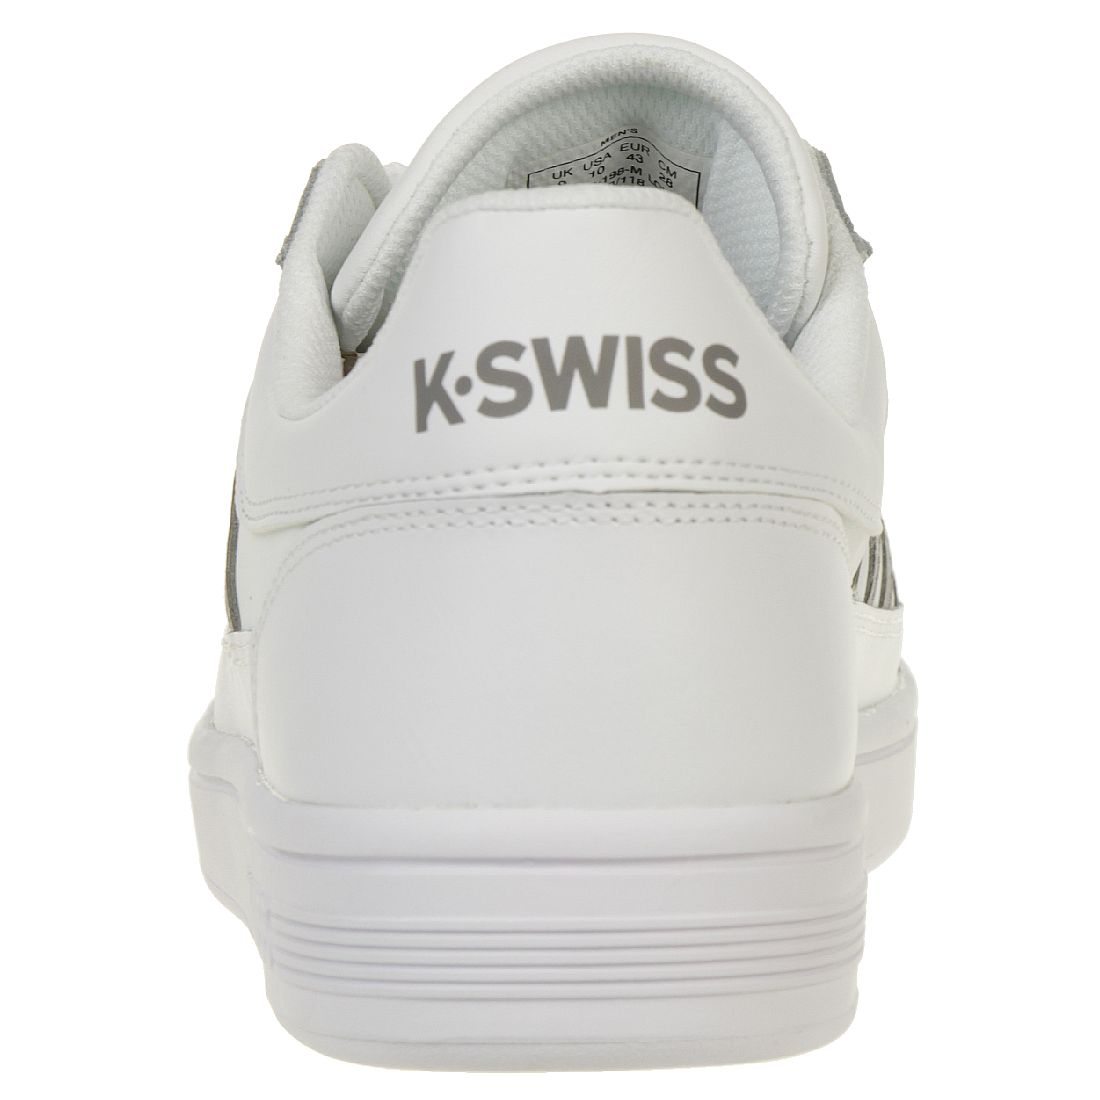 K-SWISS Court Chasseur Schuhe Herren Sneaker weiss 06042-198-M